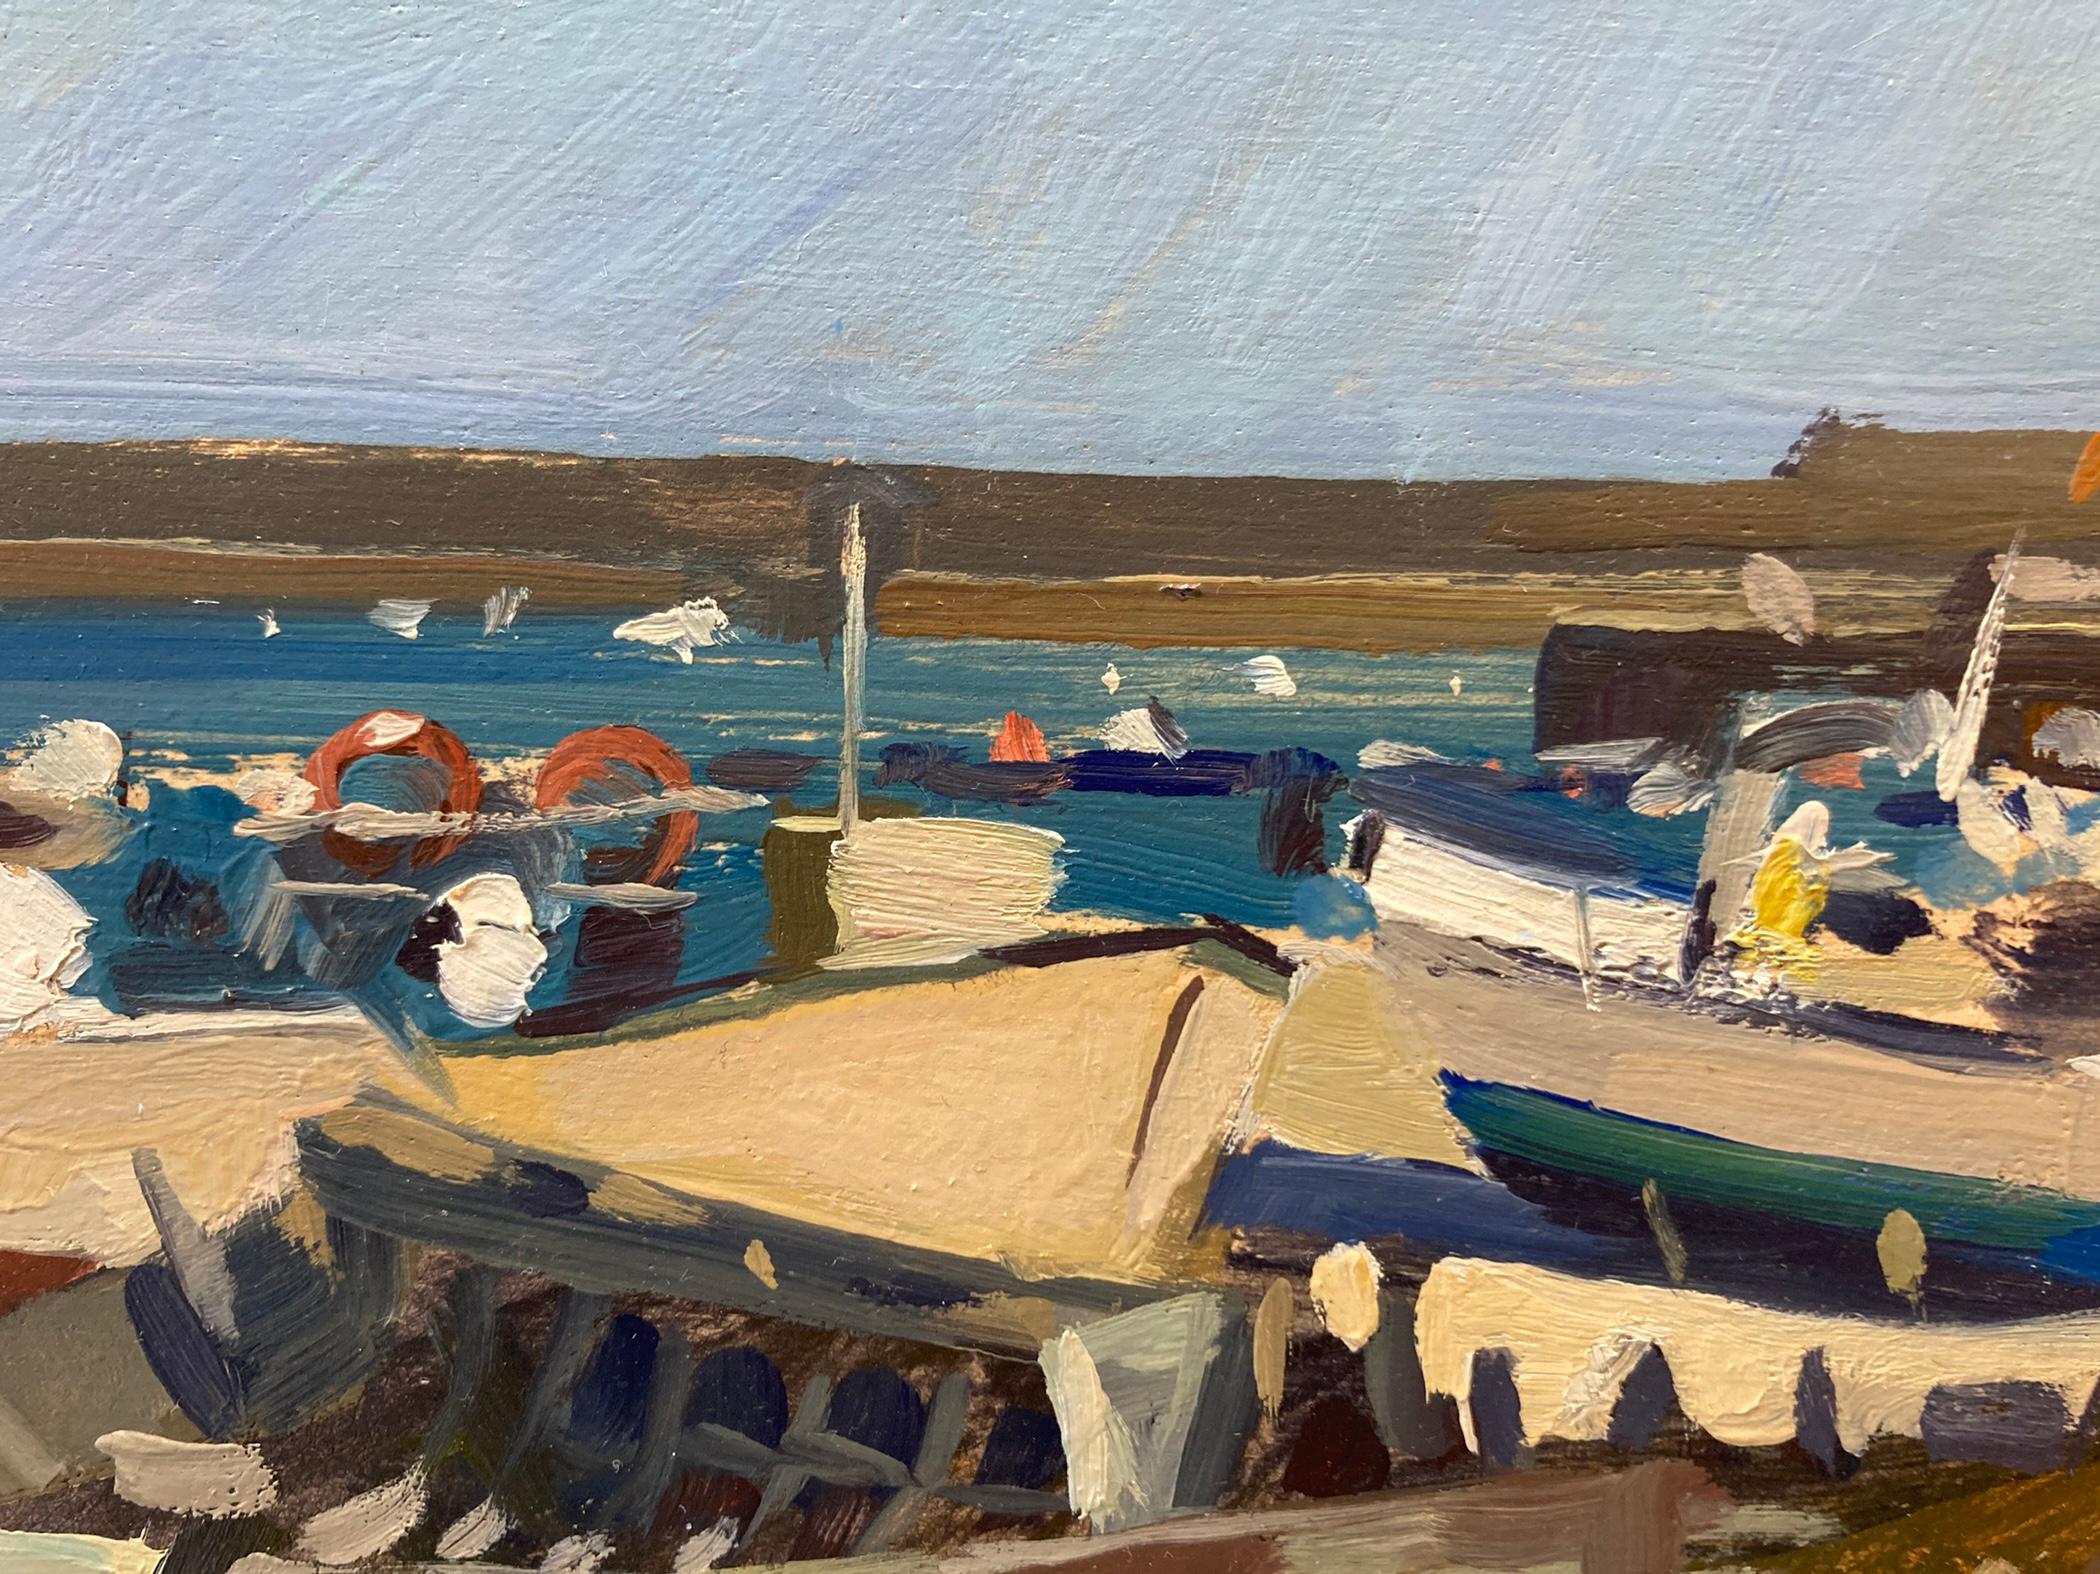 Das Pleinair-Gemälde von Dalessio zeigt eine Gruppe von Booten am Strand des Hafens von Sarges mit der Mole in der Ferne. 

Gerahmte Abmessungen: 13,5 x 17,5 Zoll

Künstler Bio:
Marc Dalessio wurde 1972 in Los Angeles, Kalifornien, geboren. Schon in